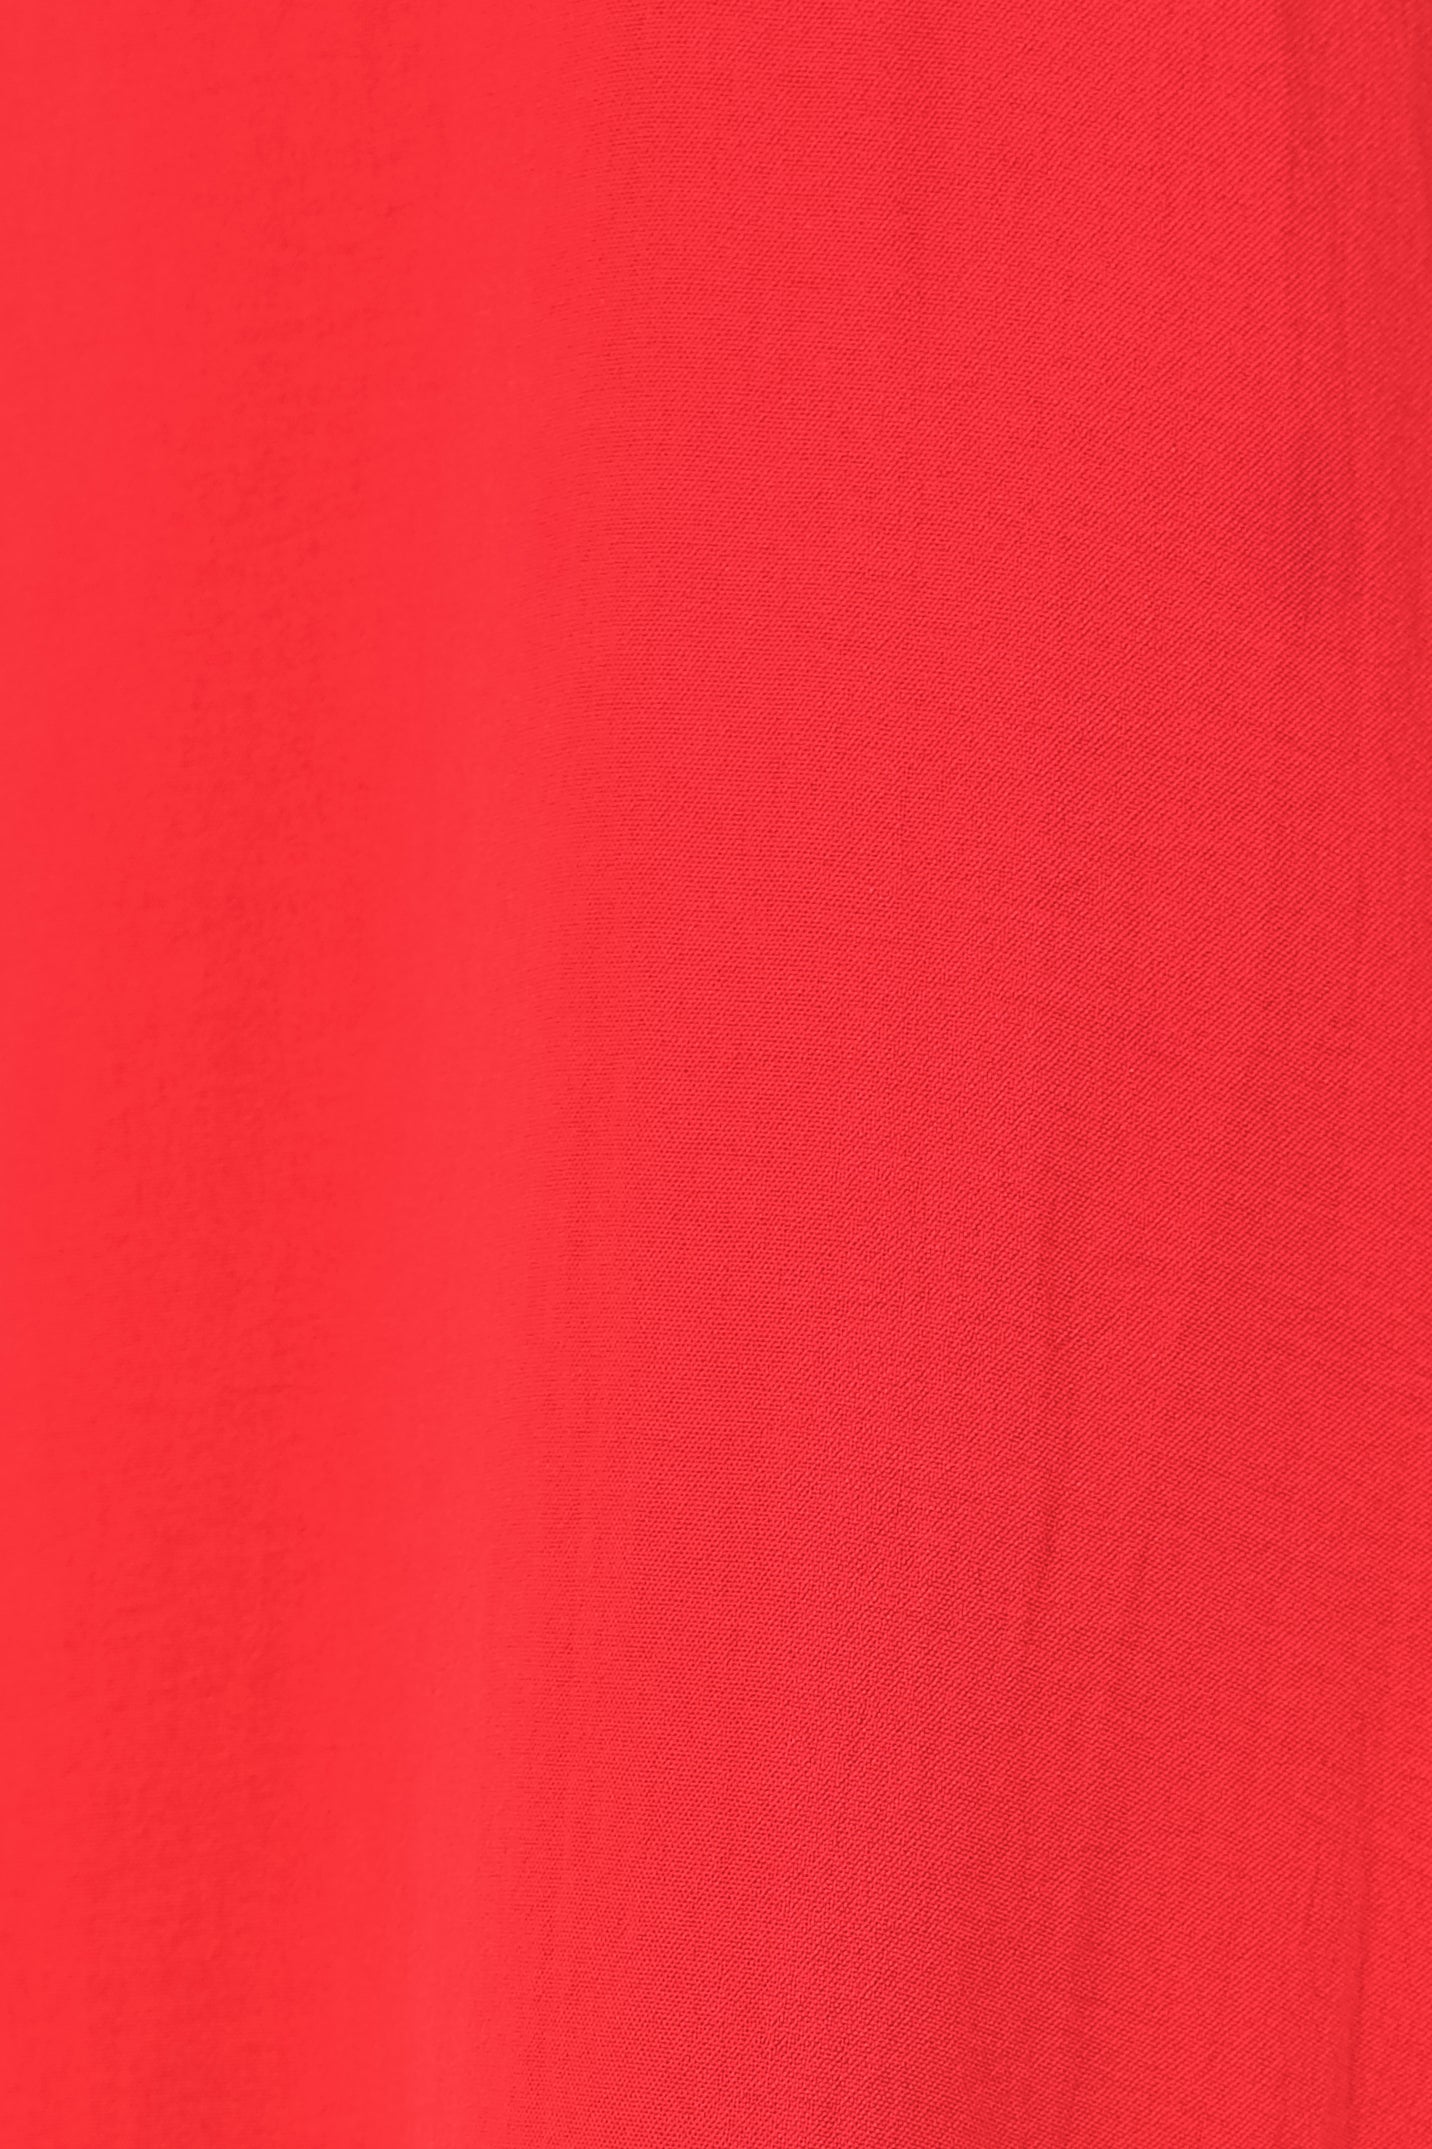 Ruffle Hem A-Line Dress In Red (Petite)